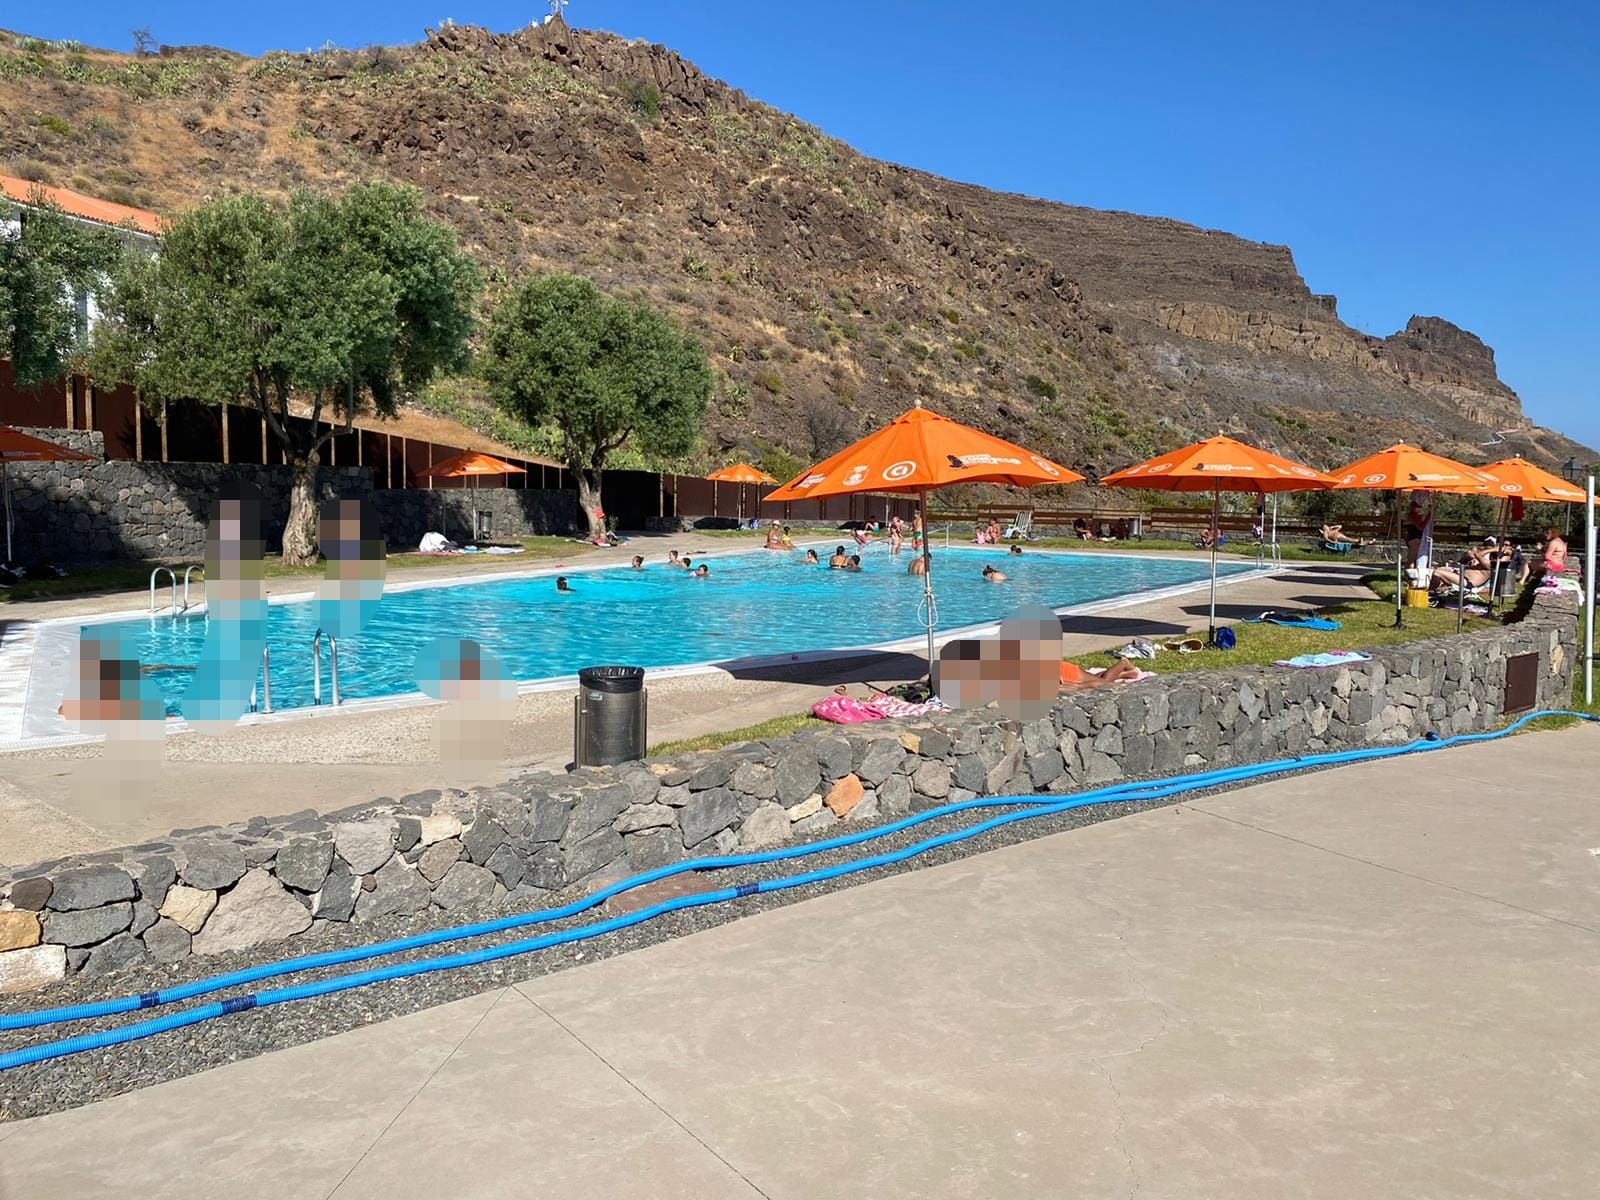  La piscina municipal de Santa Lucía casco abre sus puertas hasta el 26 de septiembre con tarifas especiales  y entrada con cita previa